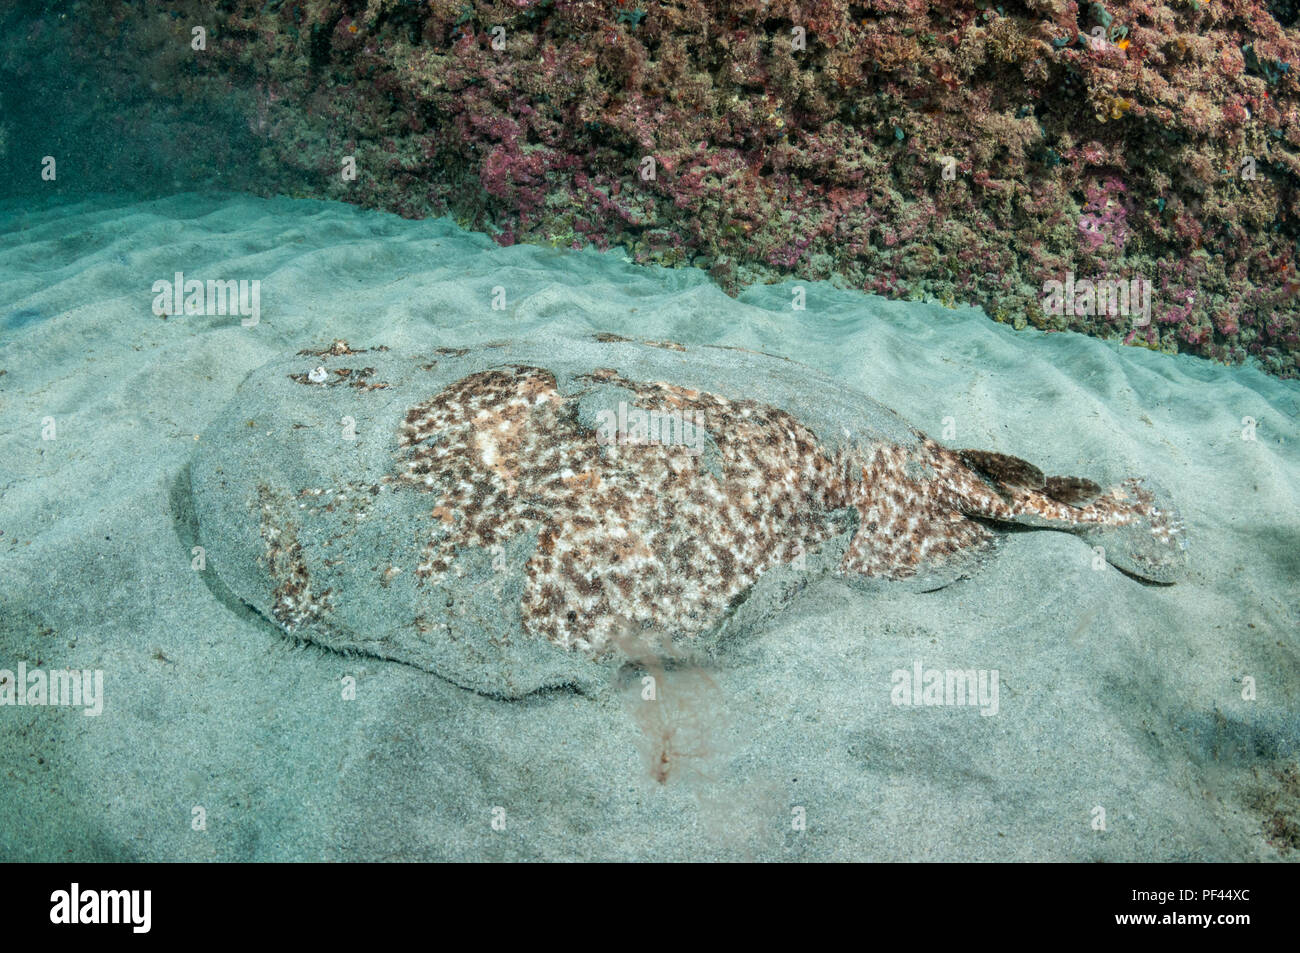 La raie torpille, marmorata, fond de sable, La Graciosa, Îles Canaries, Espagne Banque D'Images